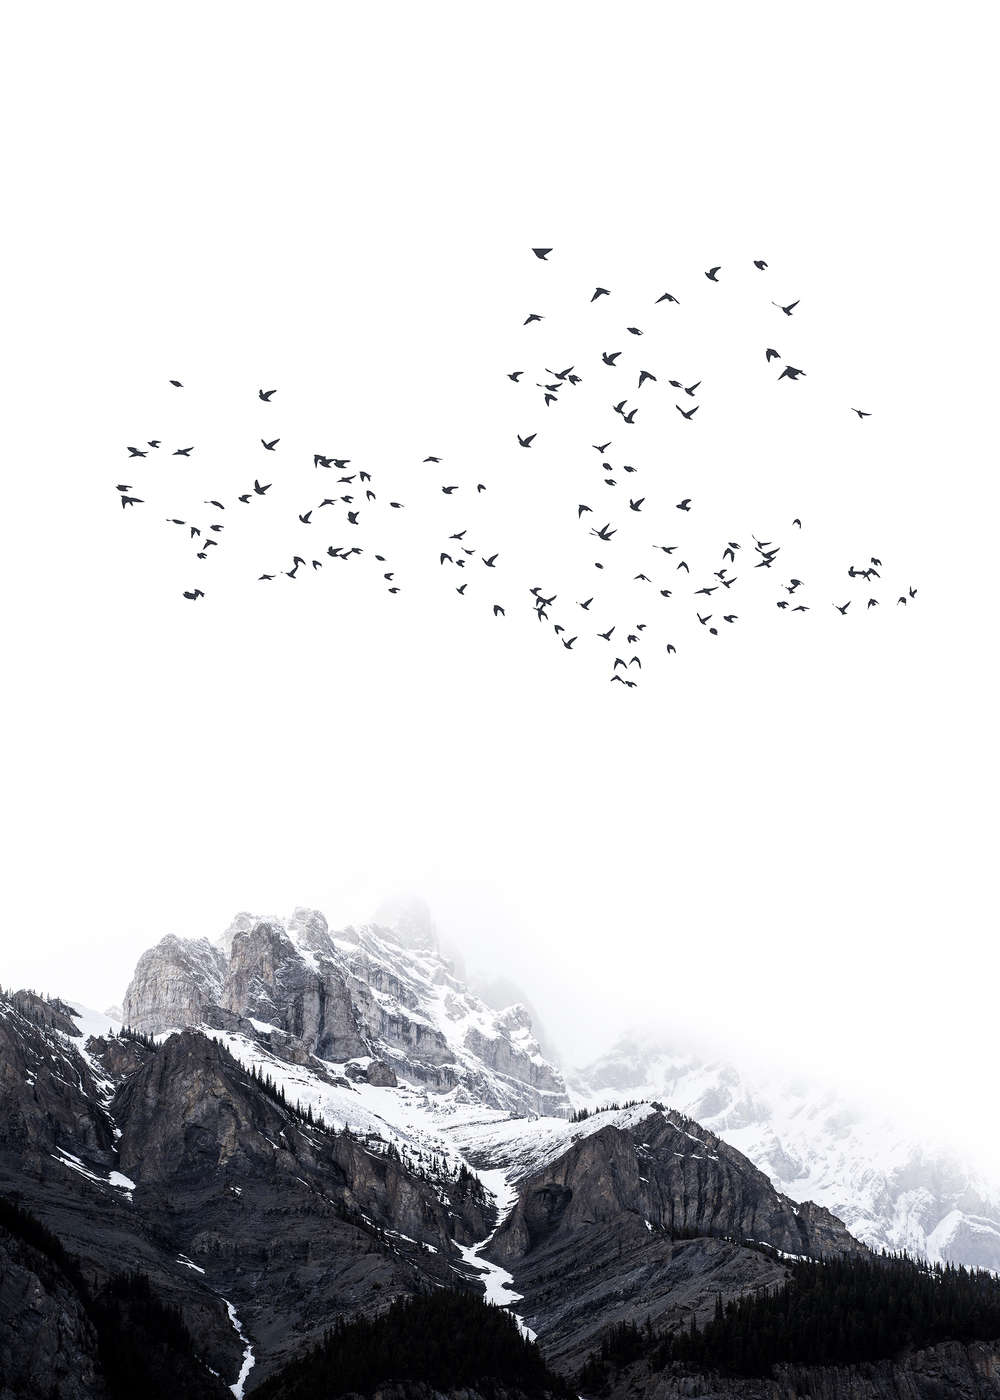             Sfondo paesaggio Montagne innevate e uccelli migratori
        